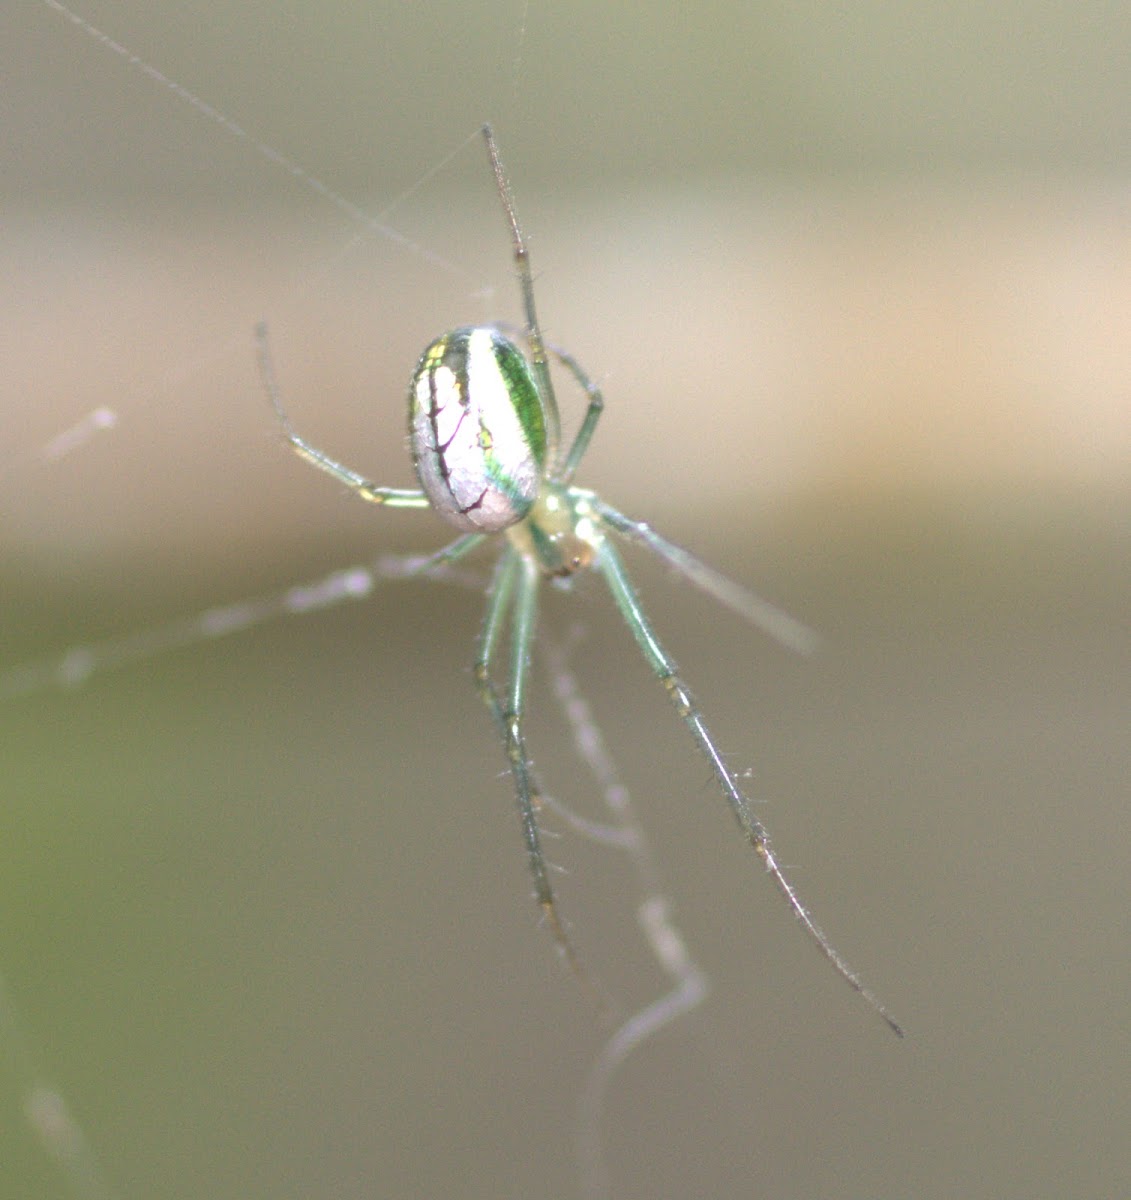 Silver vlei spider